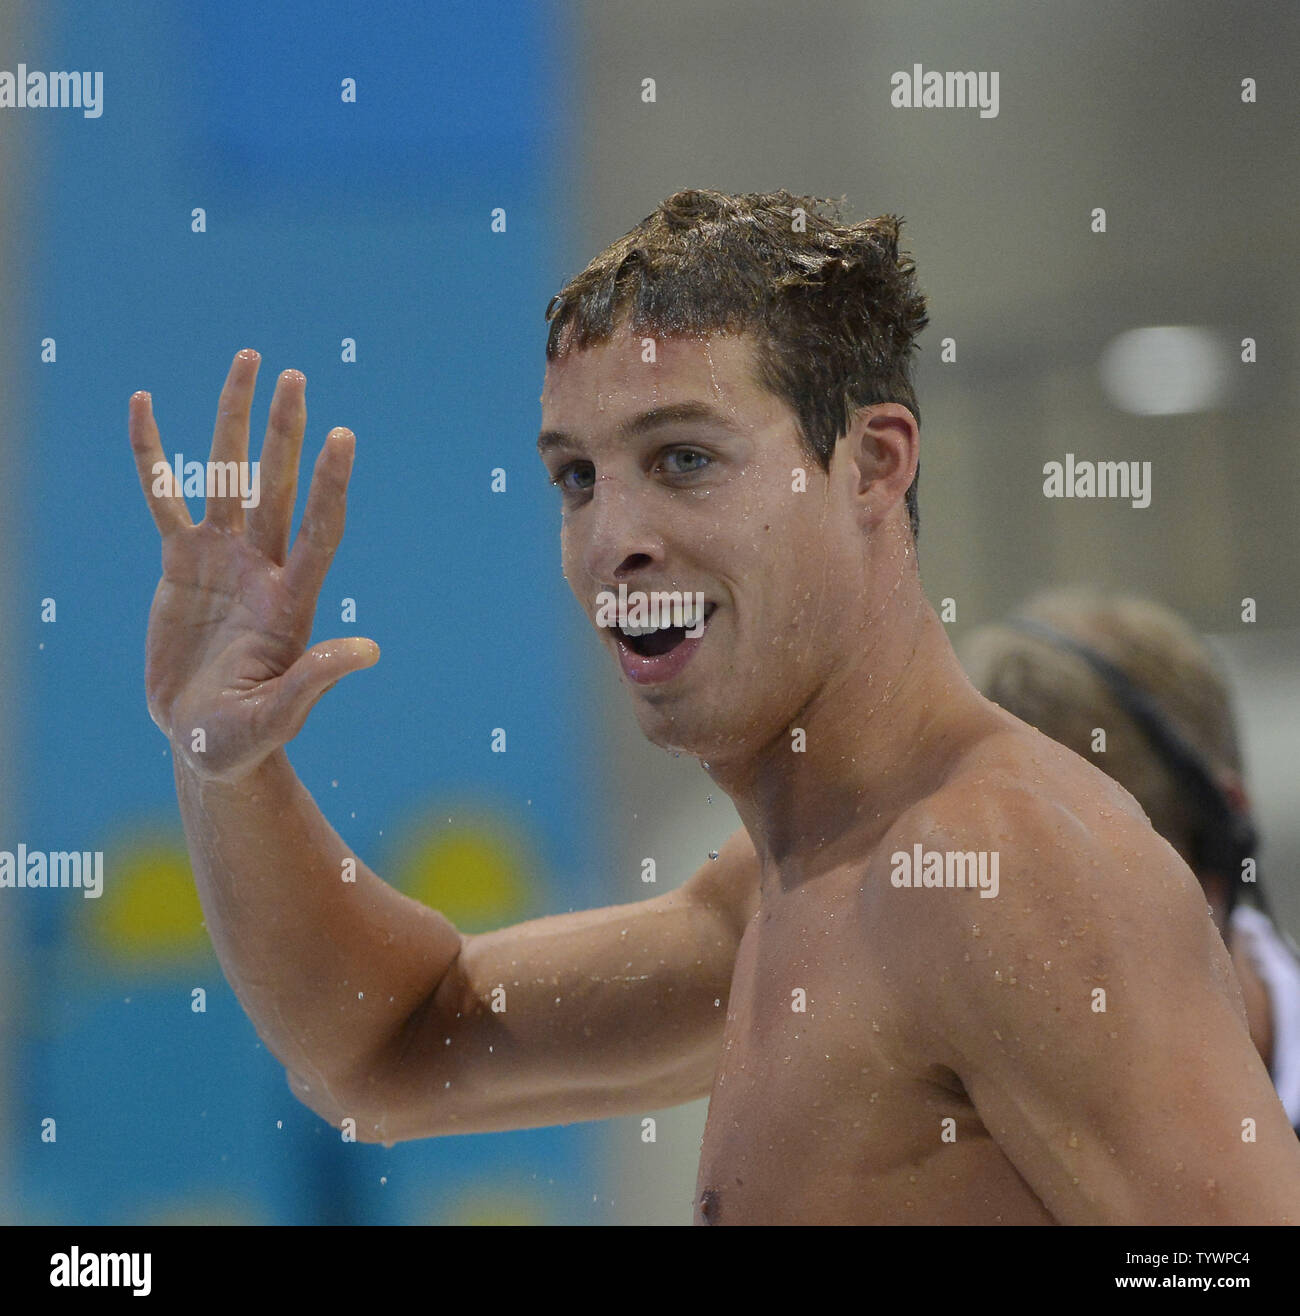 Pieter Timmers de Belgique réagit après la baignade sa chaleur dans le le 100 m nage libre aux Jeux Olympiques d'été de 2012 à Londres le 31 juillet 2012 à Stratford, Londres. Timmers a terminé avec un temps de 48,54 dans sa course, se qualifiant pour la demi-finale. UPI/Brian Kersey Banque D'Images